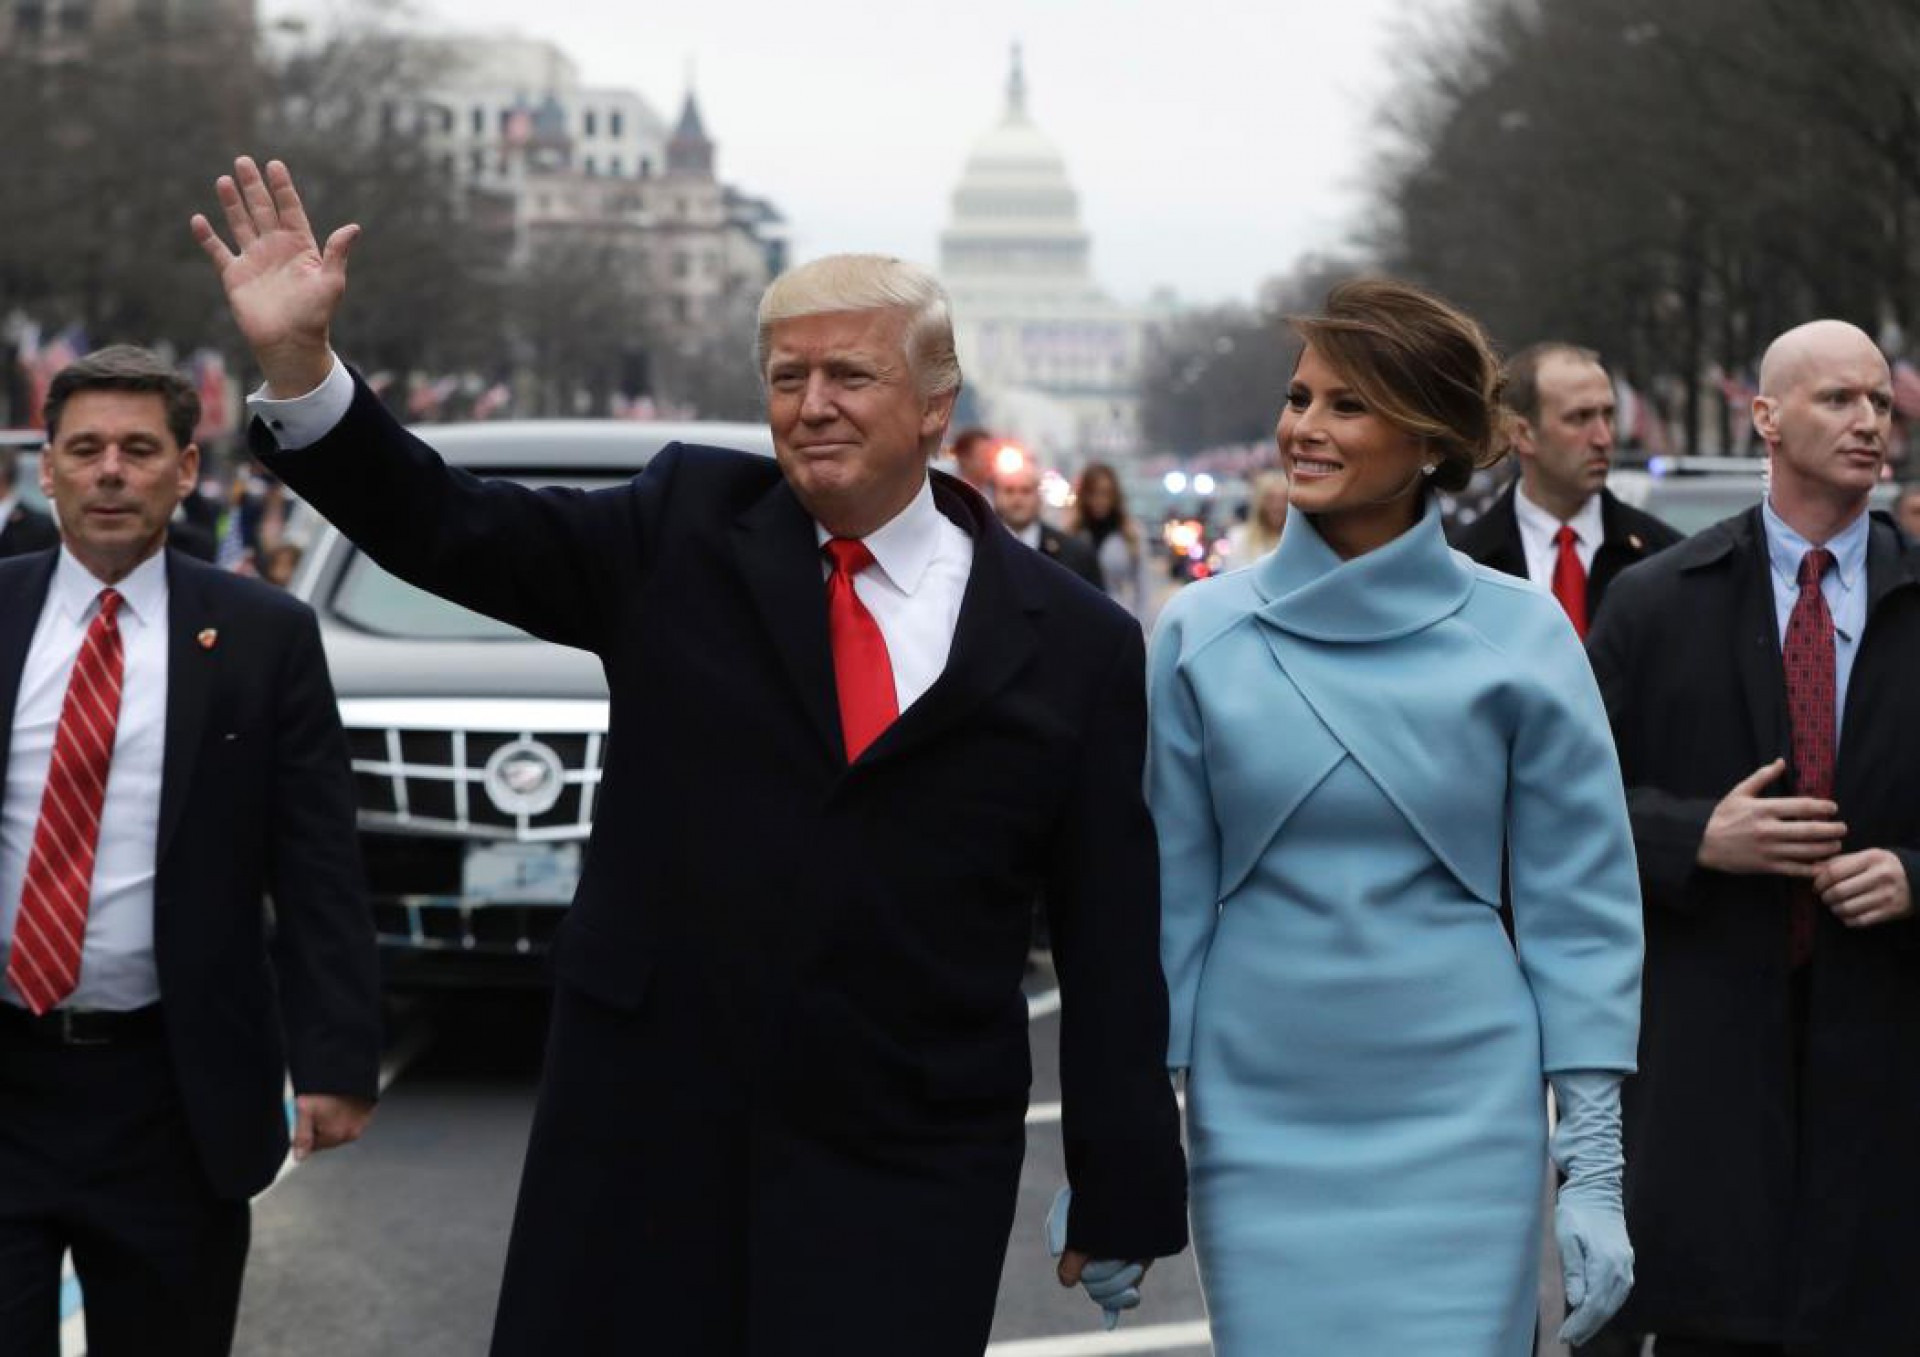 O presidente Donald Trump acena enquanto caminha com a primeira-dama Melania Trump (Foto: EVAN VUCCI/AFP)